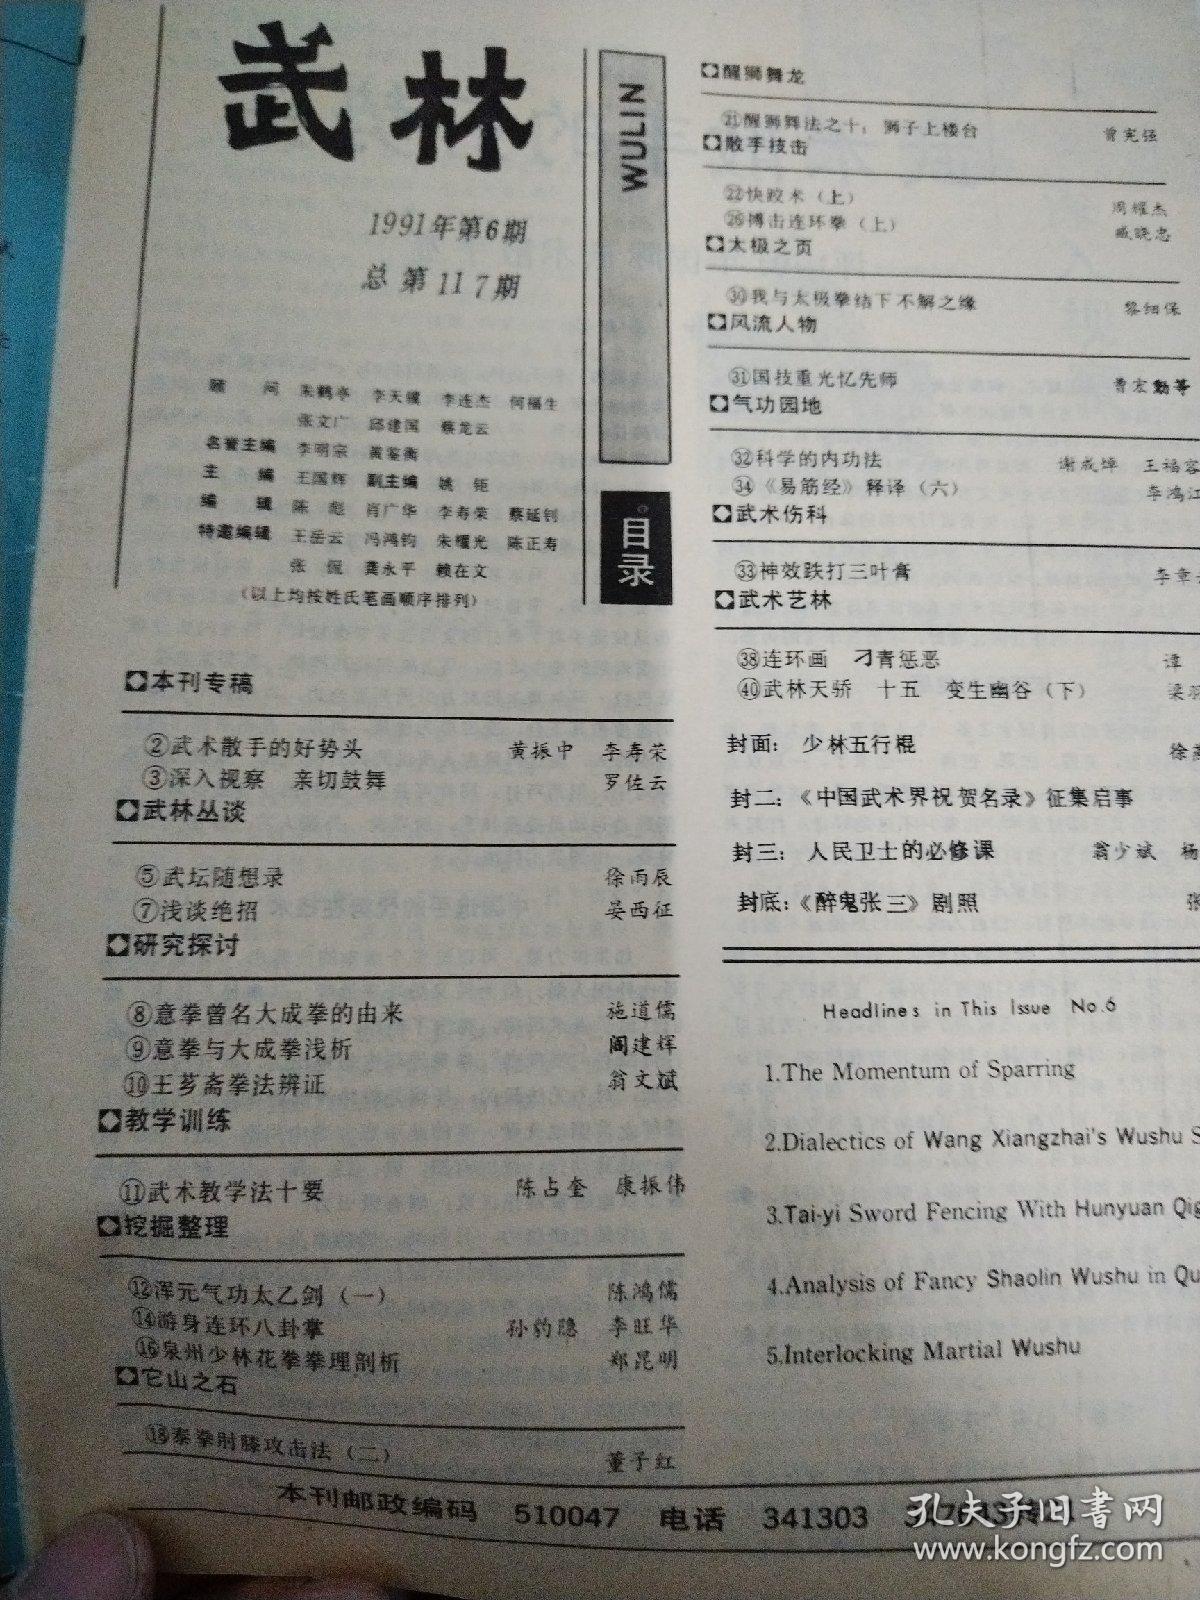 武林1991-6
游身连环八卦掌